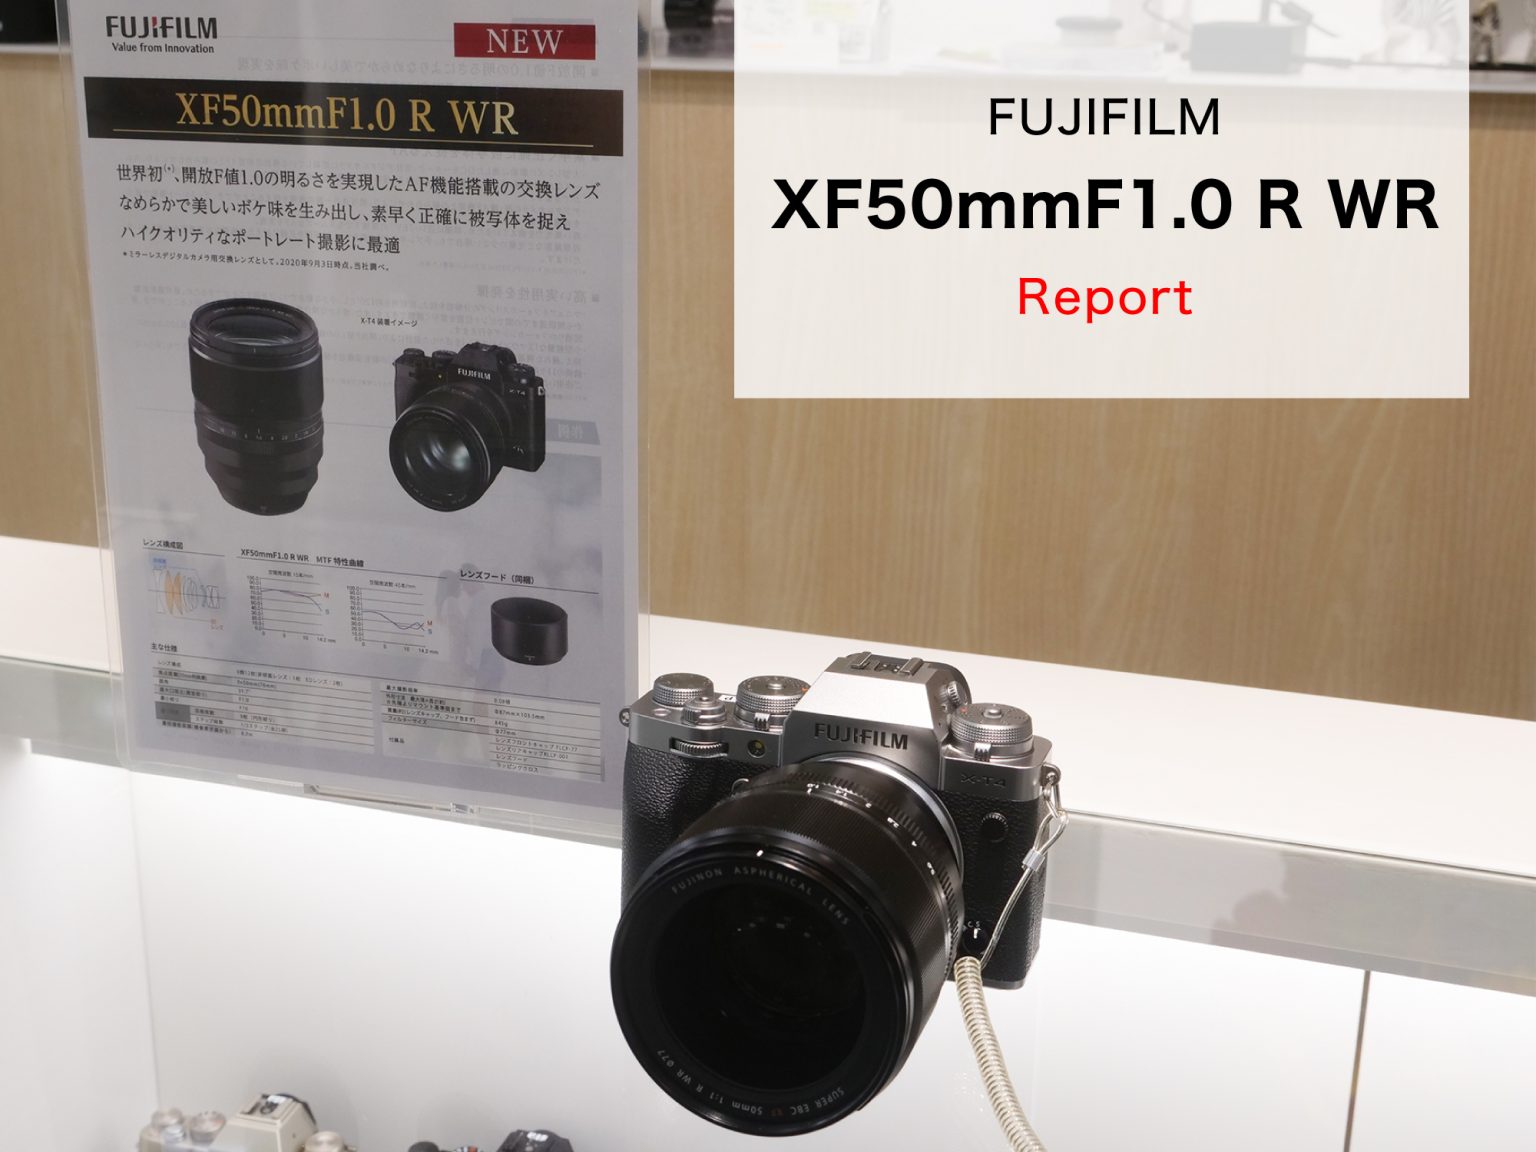 【FUJIFILM】XF50mmF1.0 R WR 先行展示レポート